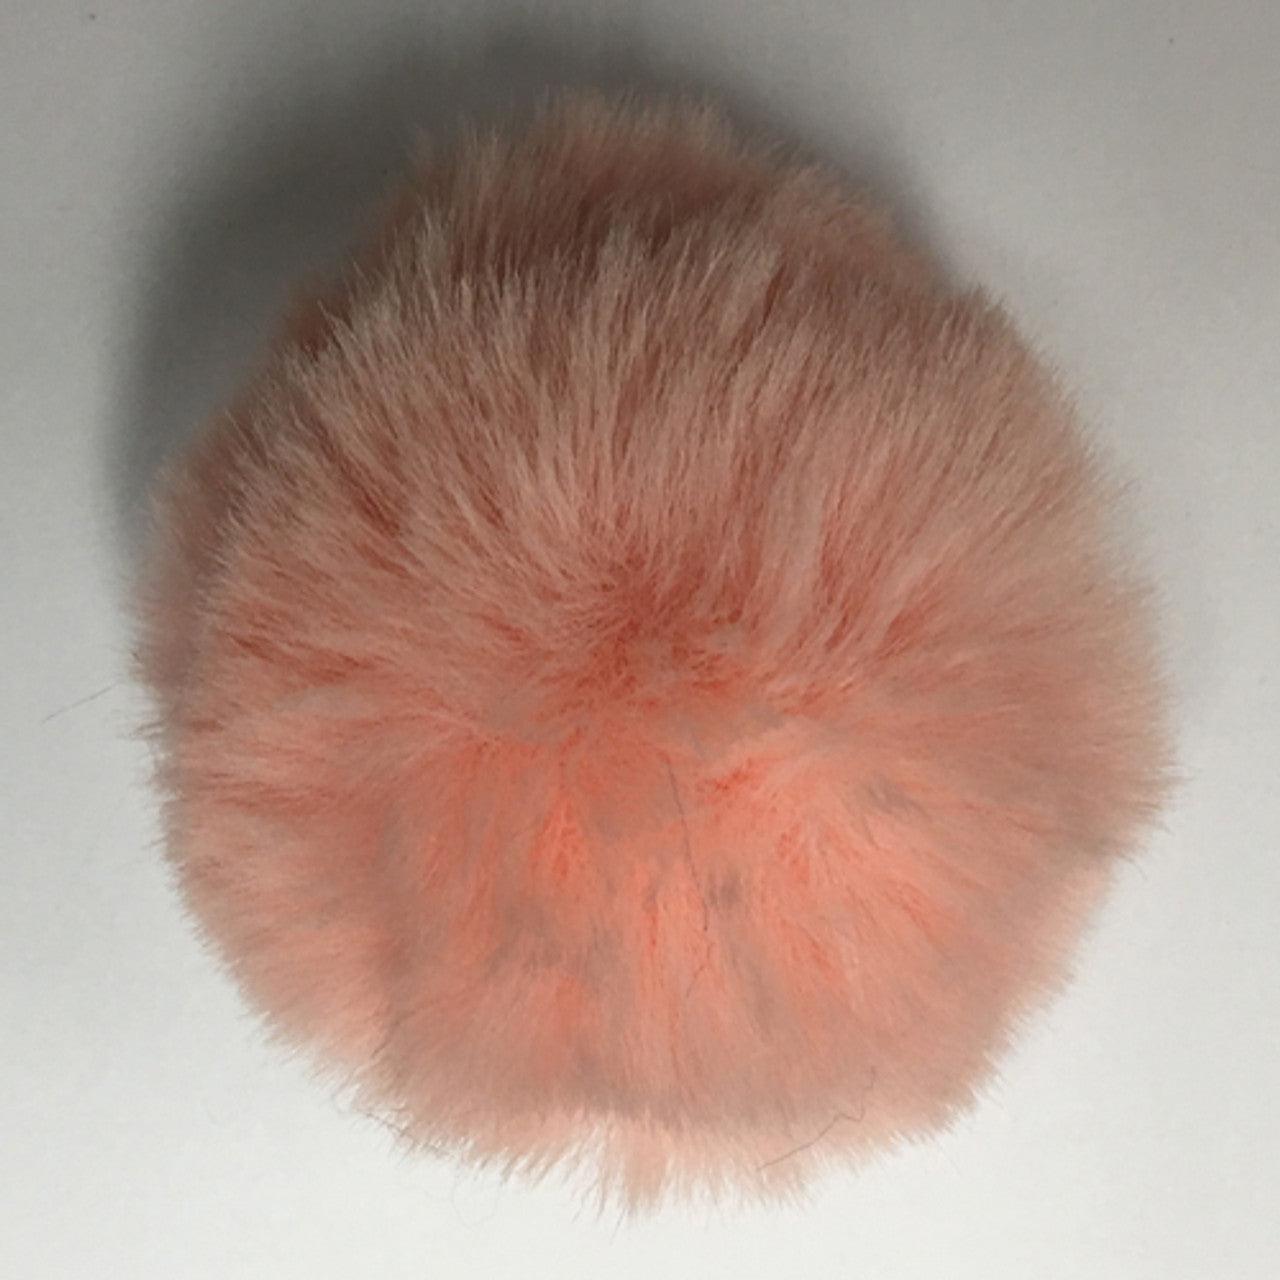 McPorter Farm-Faux Rabbit Fur Pompom - Peach-pompoms-gather here online